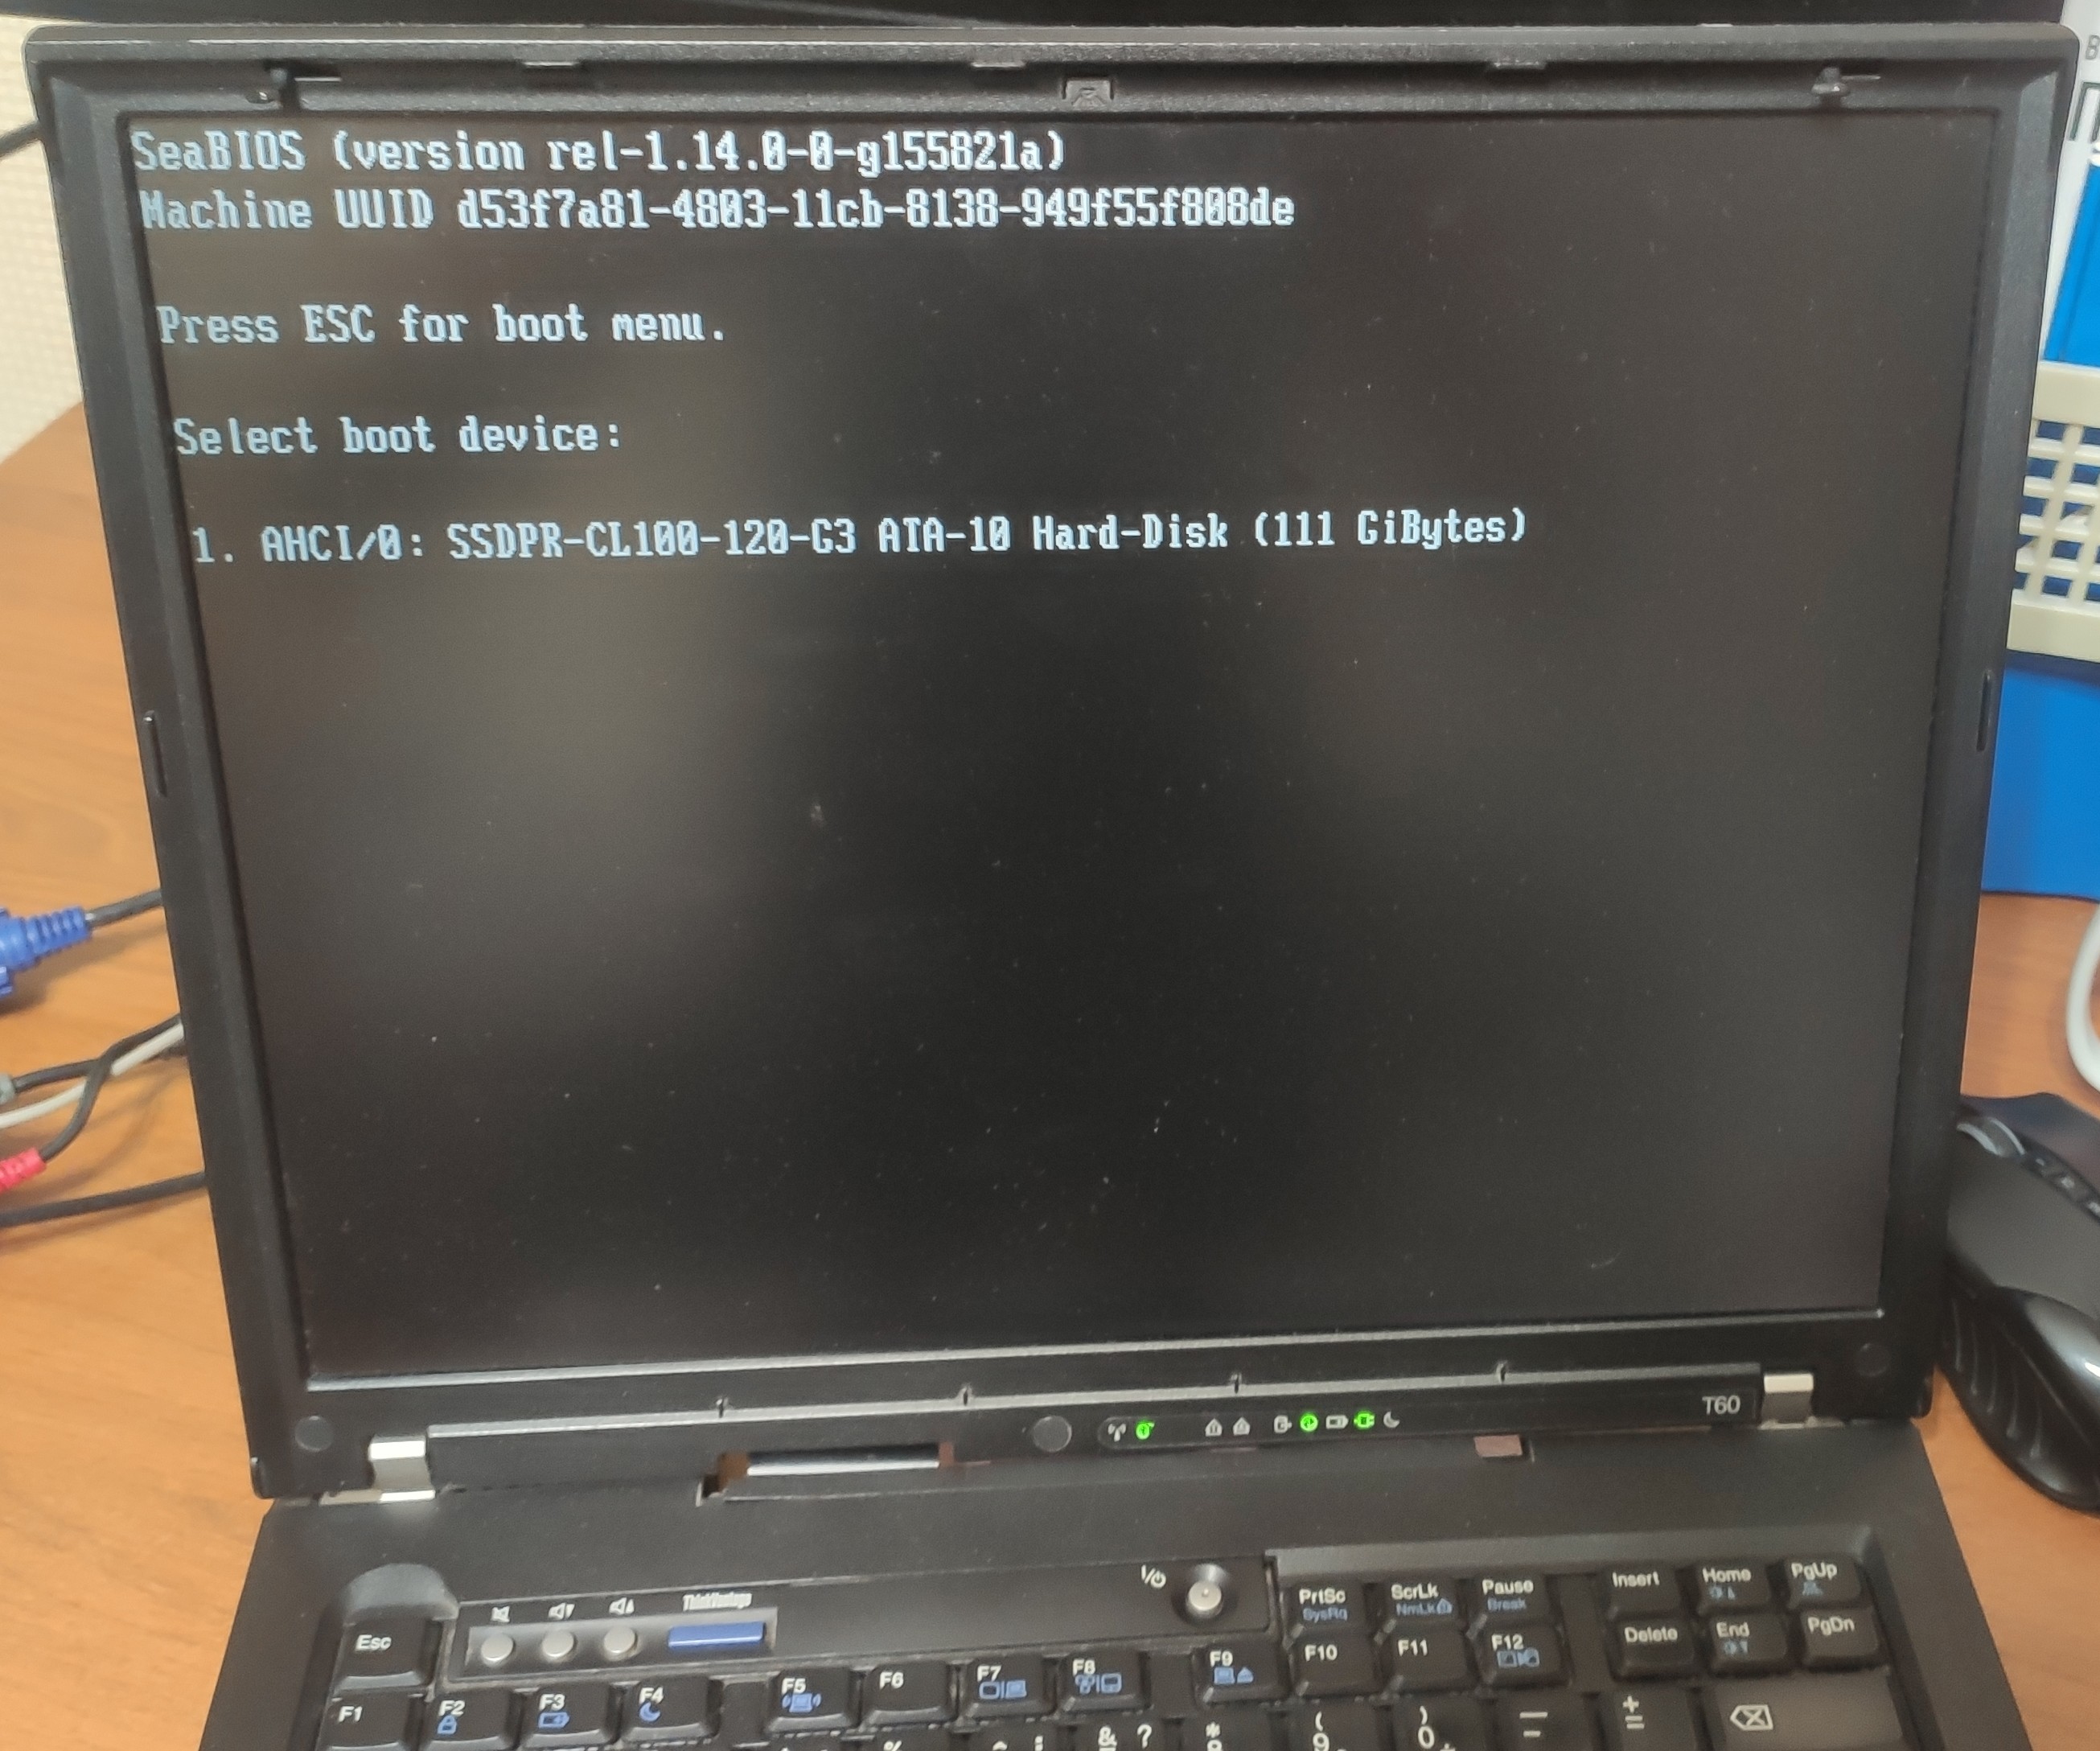 ATI версия ThinkPad T60, на котором заработал Coreboot с SeaBIOS. GRUB2 не запустился на нём, но говорят что это возможно. О том как собрать образ для T60 с ATI я уже делал гайд